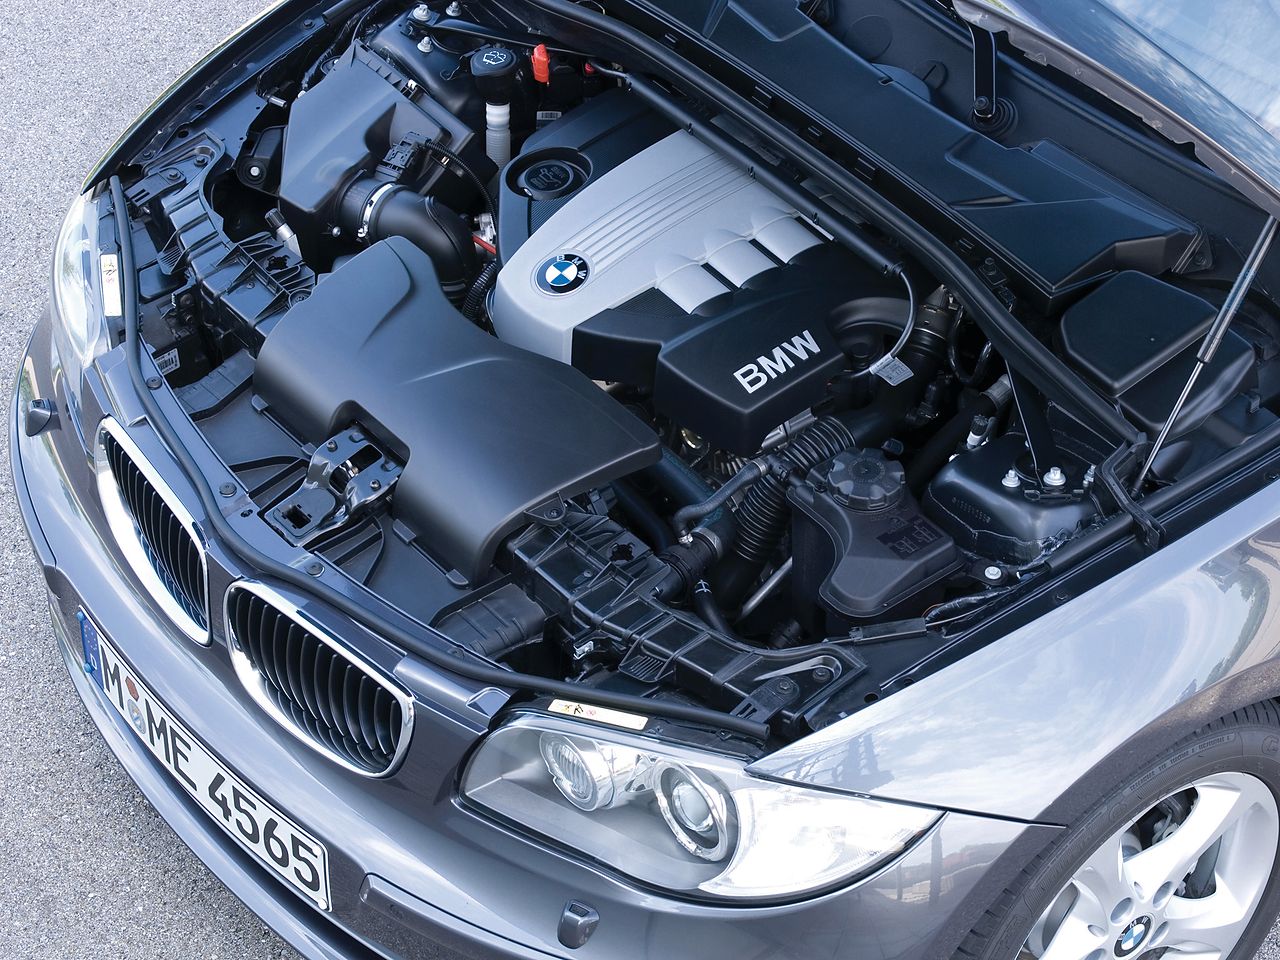 Silnik 2.0 od BMW (kod N47) to często bardzo negatywnie oceniana jednostka. Mimo wszystko cieszy się dużą popularnością wśród kierowców.